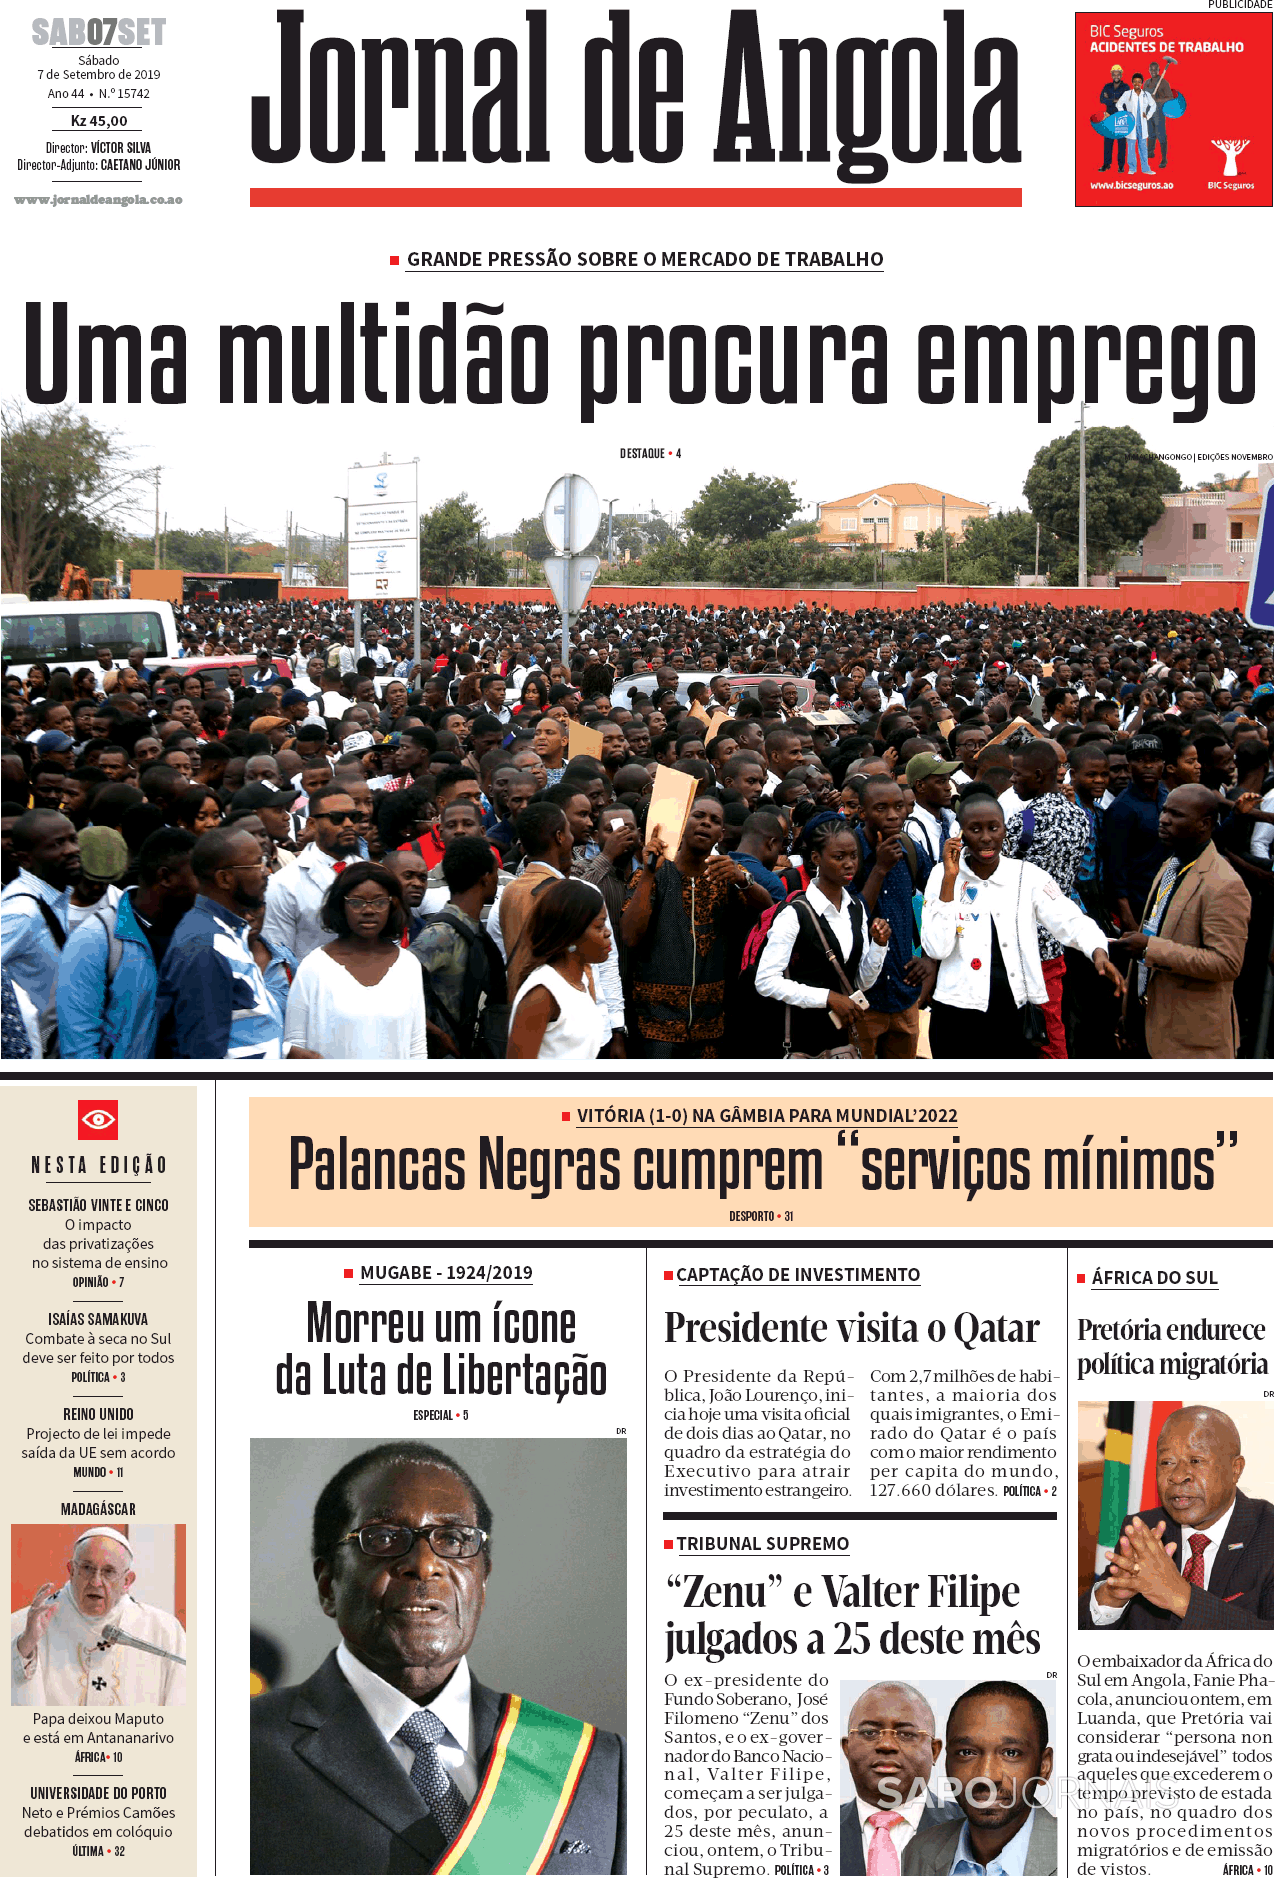 Jornal De Angola 7 Set 2019 Jornais E Revistas Sapopt Última Hora E Notícias De Hoje 4633